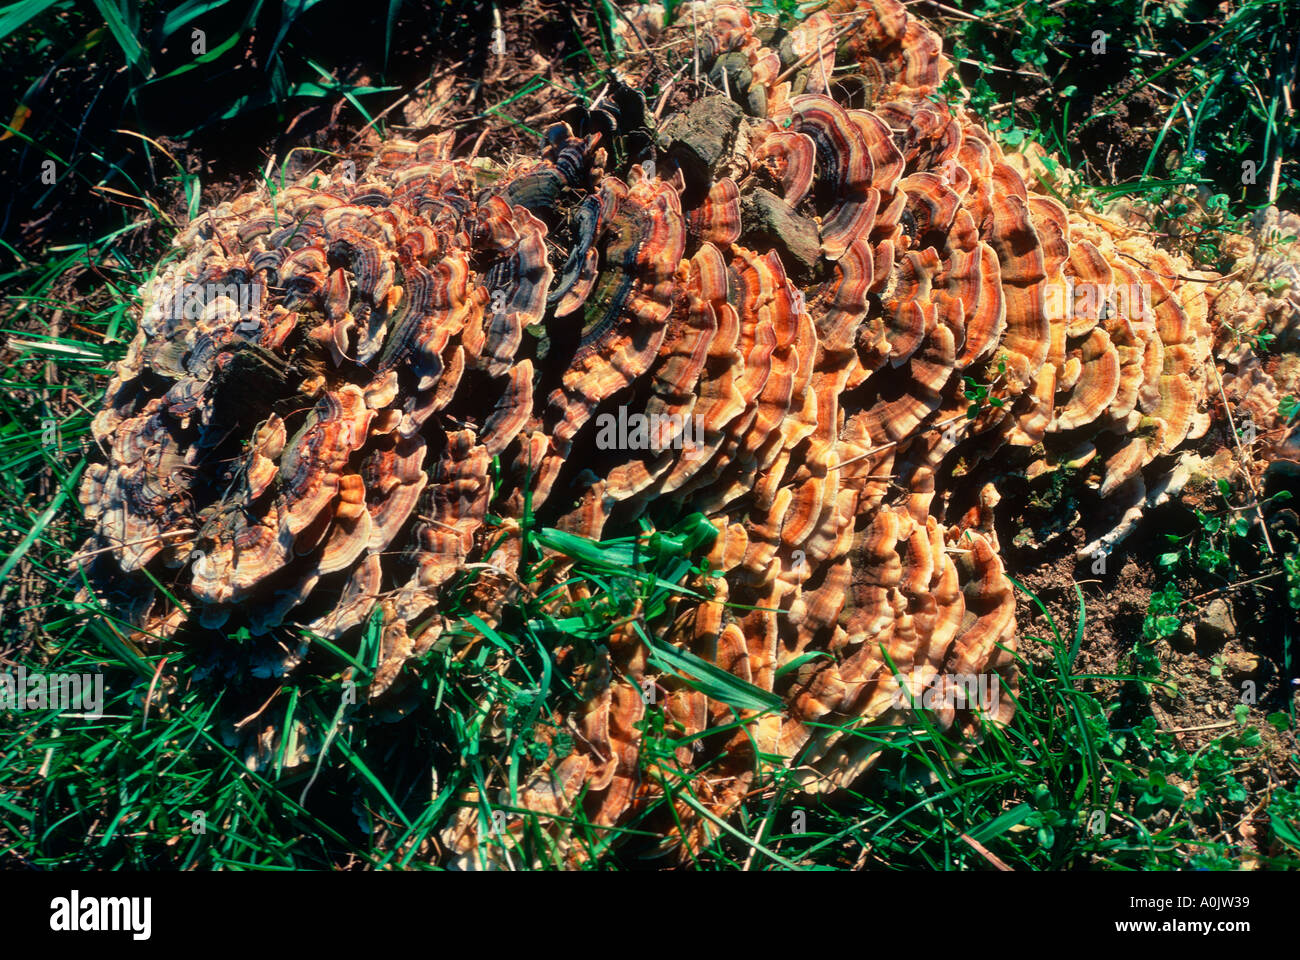 Common Zoned Polyporus or Turkey Tail Mushroom, Coriolus versicolor Stock Photo